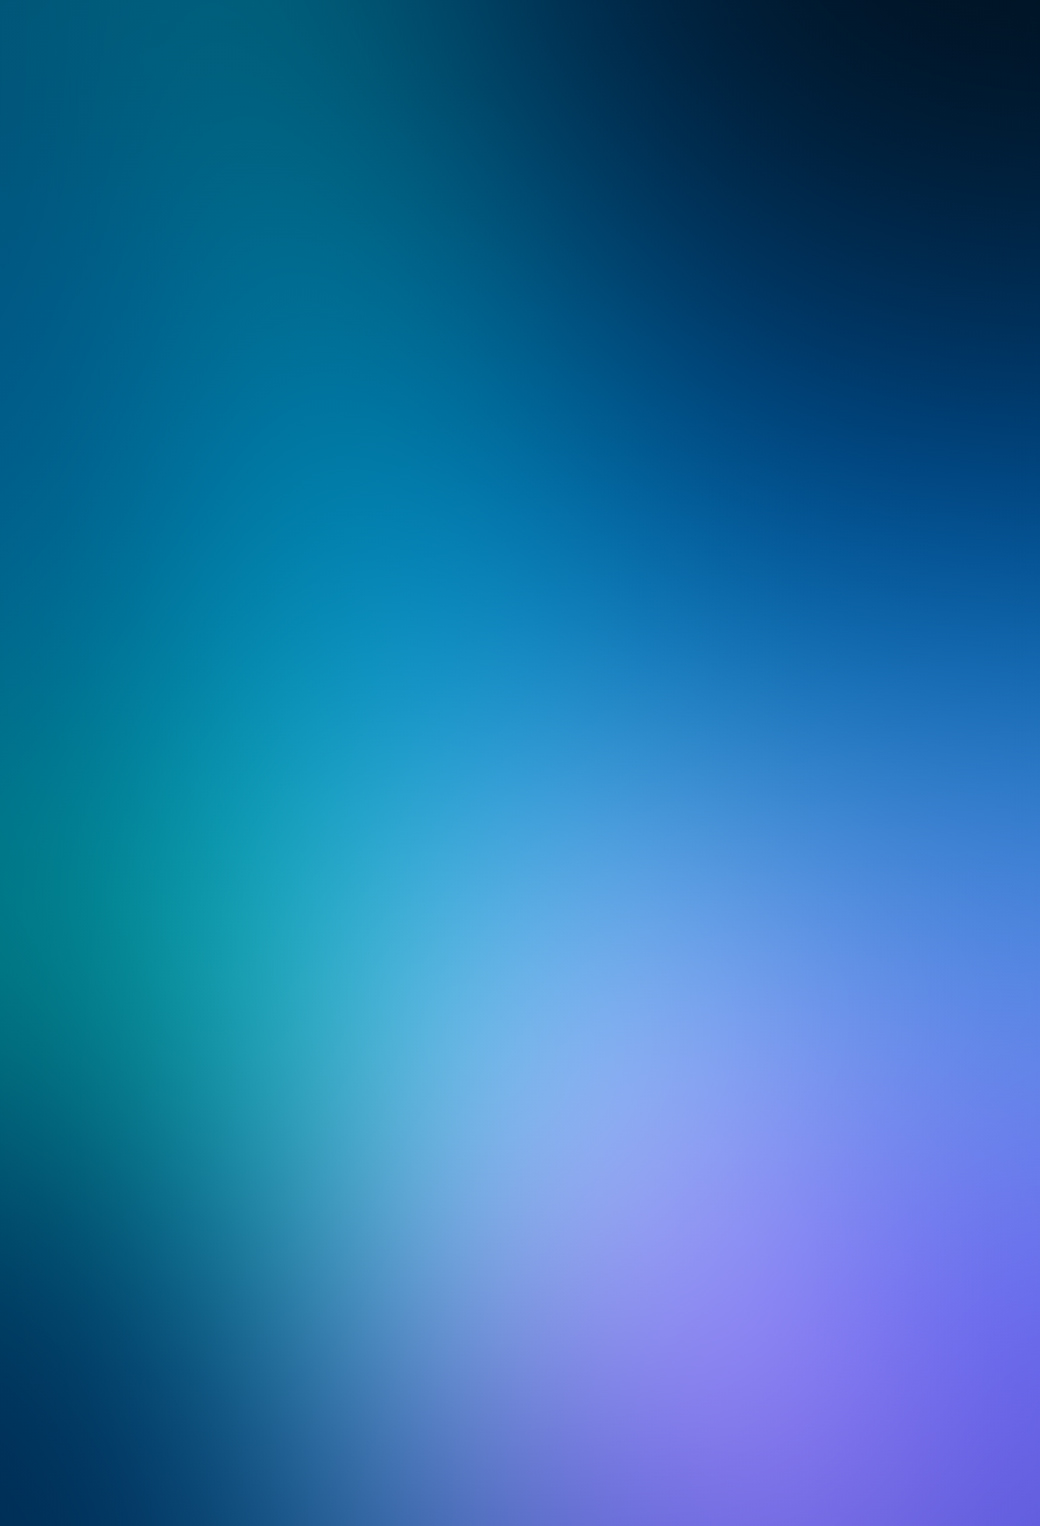 iphone parallax wallpaper,azul,cielo,tiempo de día,agua,turquesa